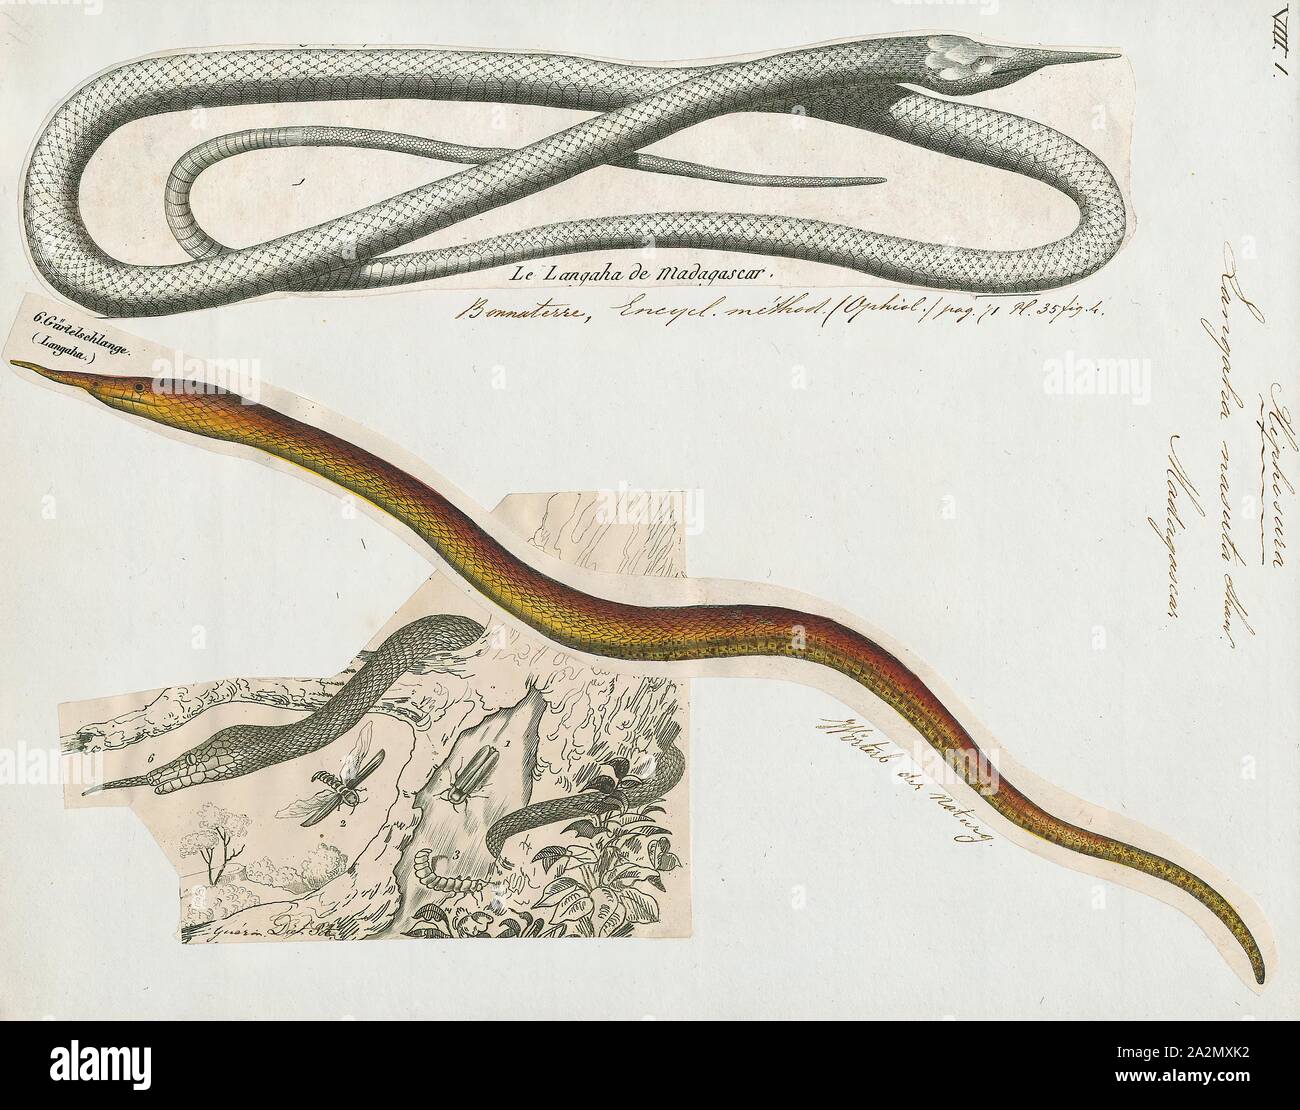 Langaha nasuta, Drucken, Langaha ist eine Gattung der colubrid Snakes in der unterfamilie Pseudoxyrhophiinae. Die Gattung enthält drei Arten, die alle in Madagaskar endemisch sind., 1700-1880 Stockfoto